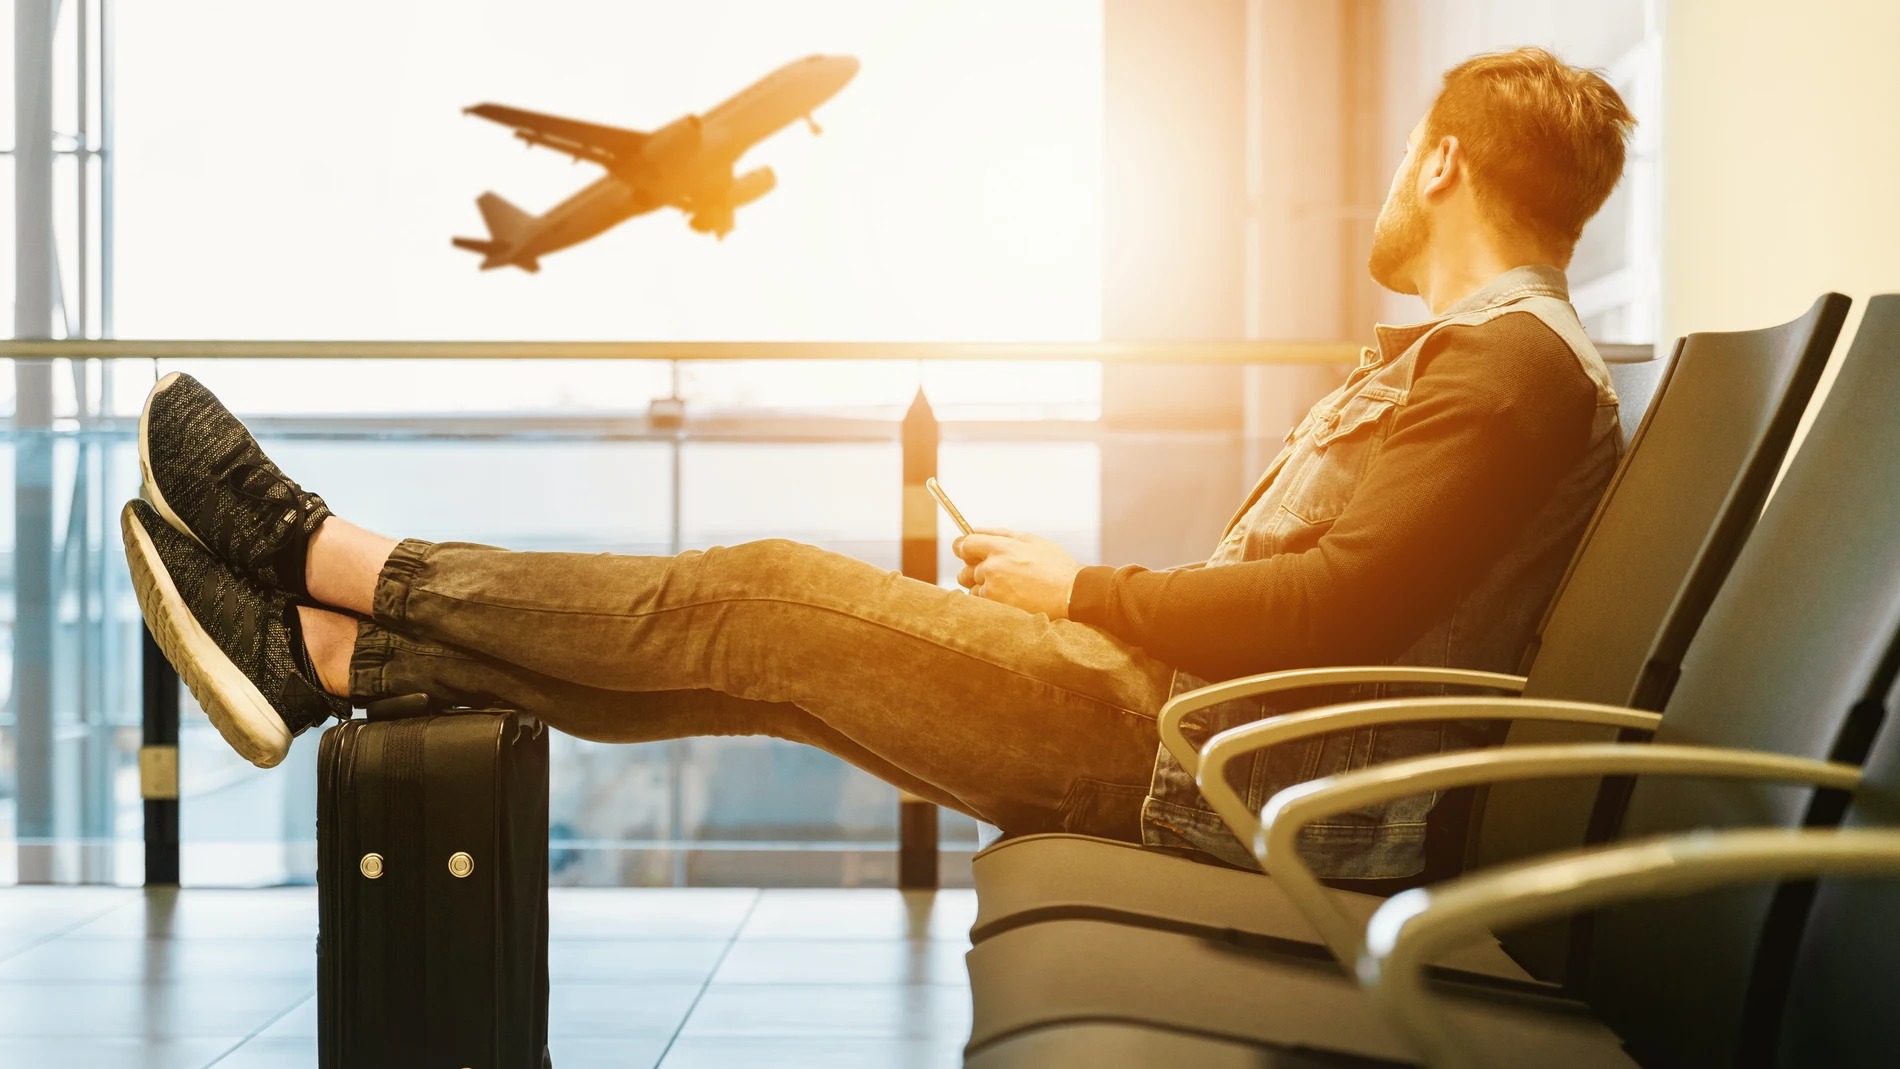 Novedades viajes: las aerolíneas no podrán cobrar por el equipaje de mano